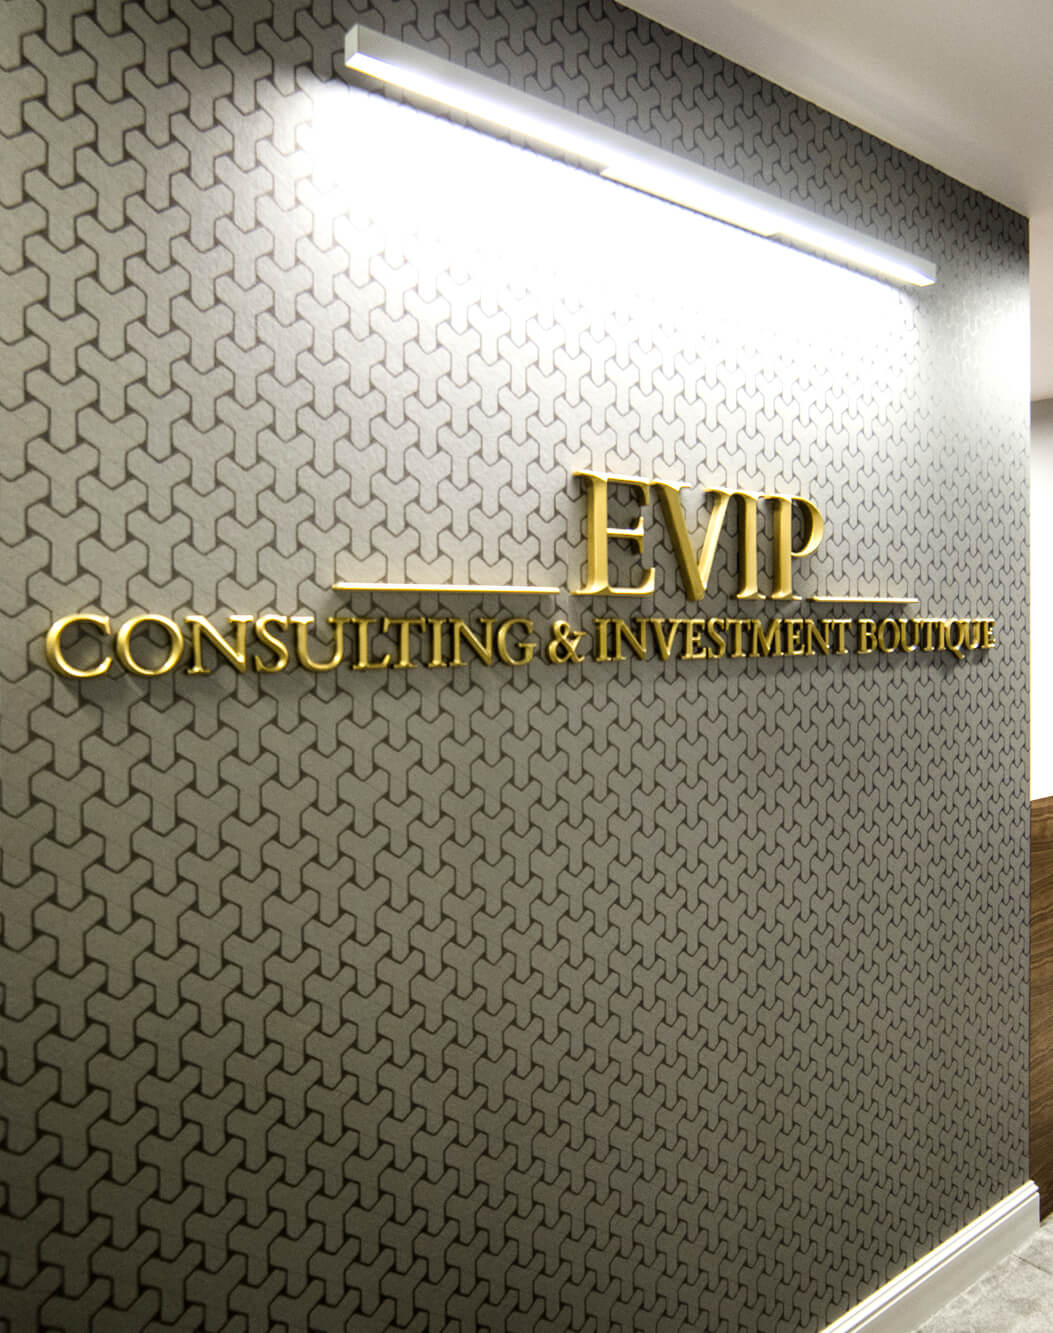 Evip - prismatische Buchstaben - Evip - 3D-Prismenbuchstaben in der Lobby